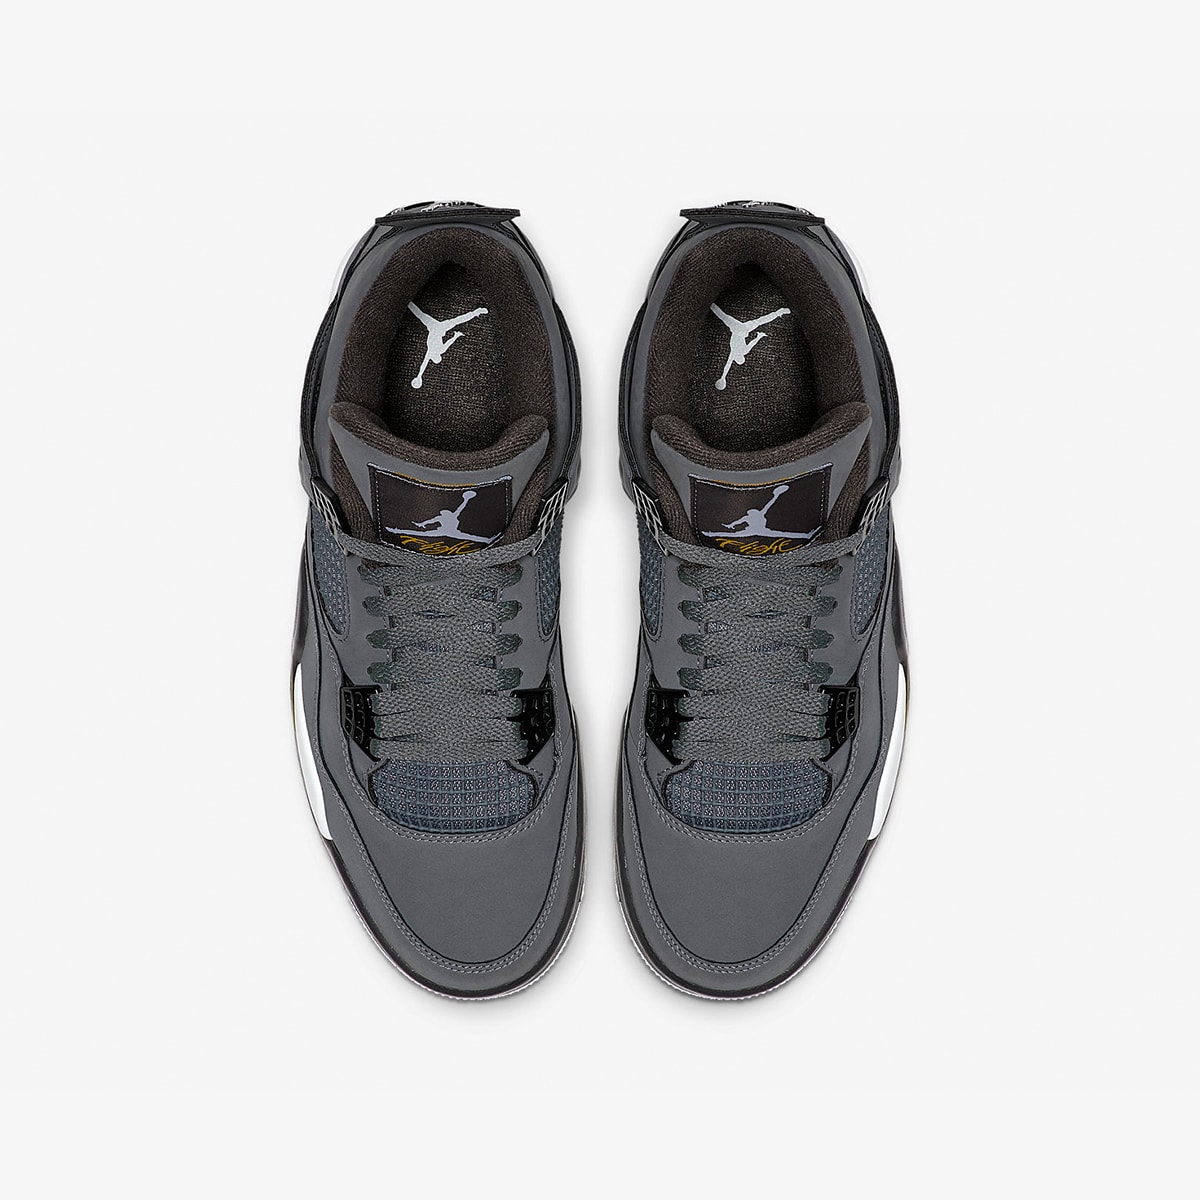 Air Jordan 4 Retro (Cool Grey, Chrome & Charcoal) | END. Launches